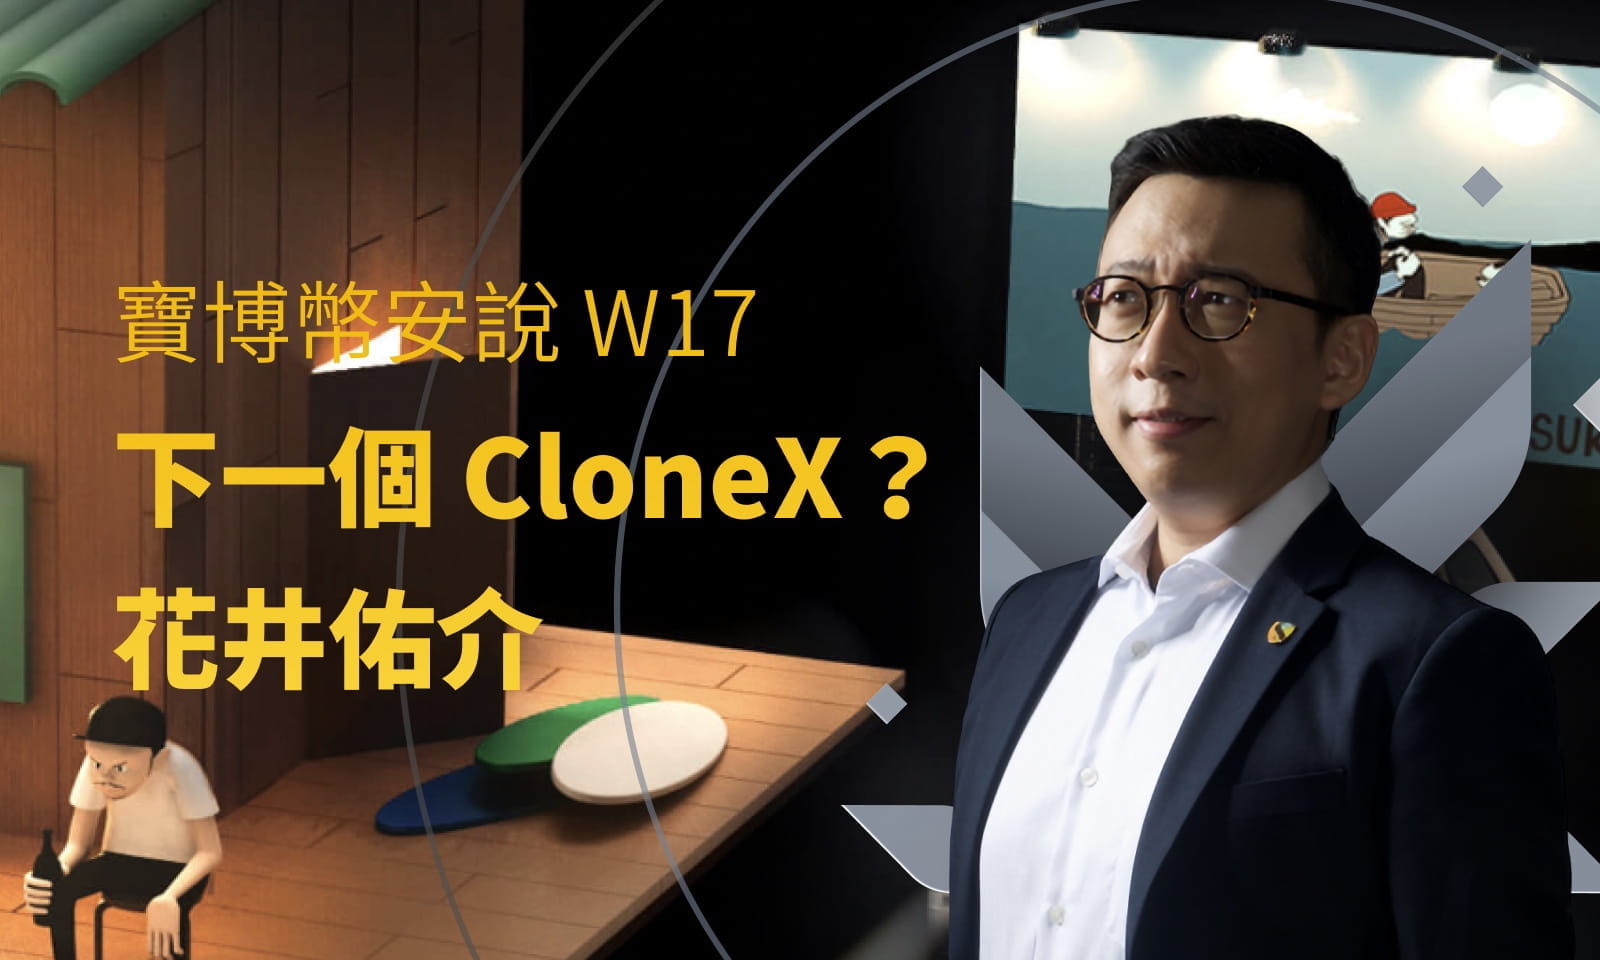 寶博幣安說 W17
下一個 CloneX？
花井佑介